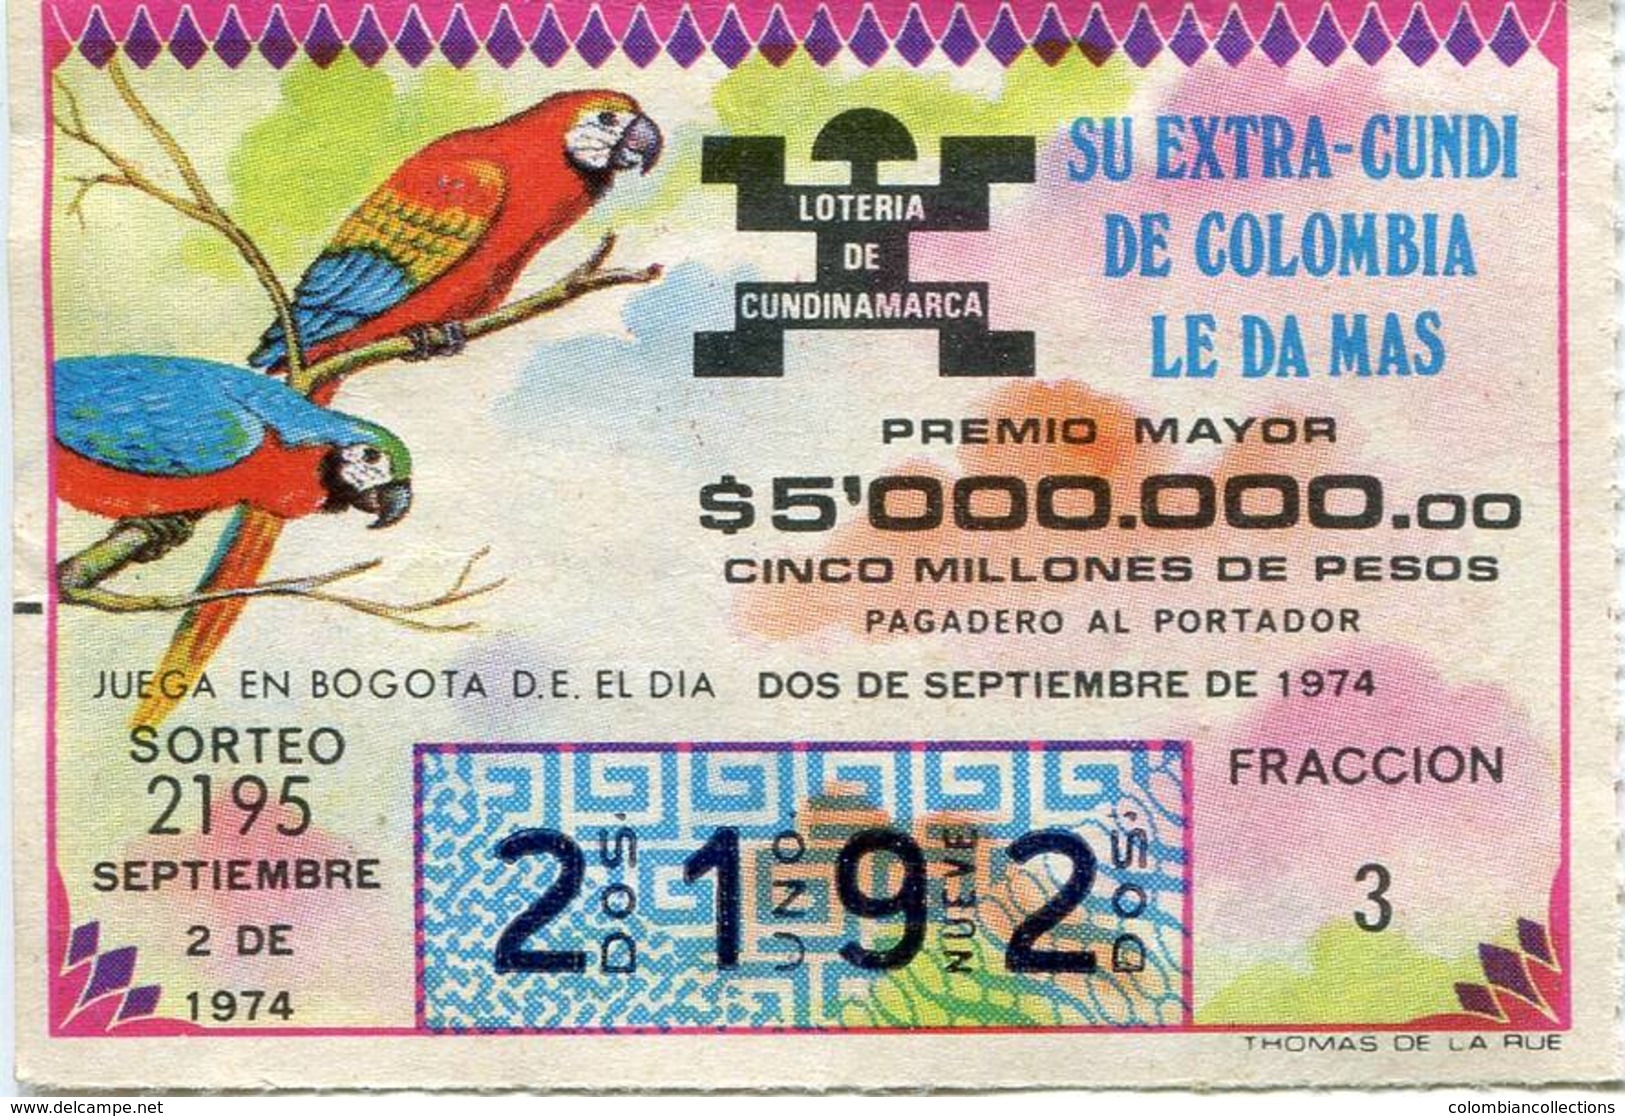 Lote 726, Colombia, Loteria, Lottery, Loteria De Cundinamarca, Sorteo 2195, Papagayo, Macaw, Bird - Billetes De Lotería